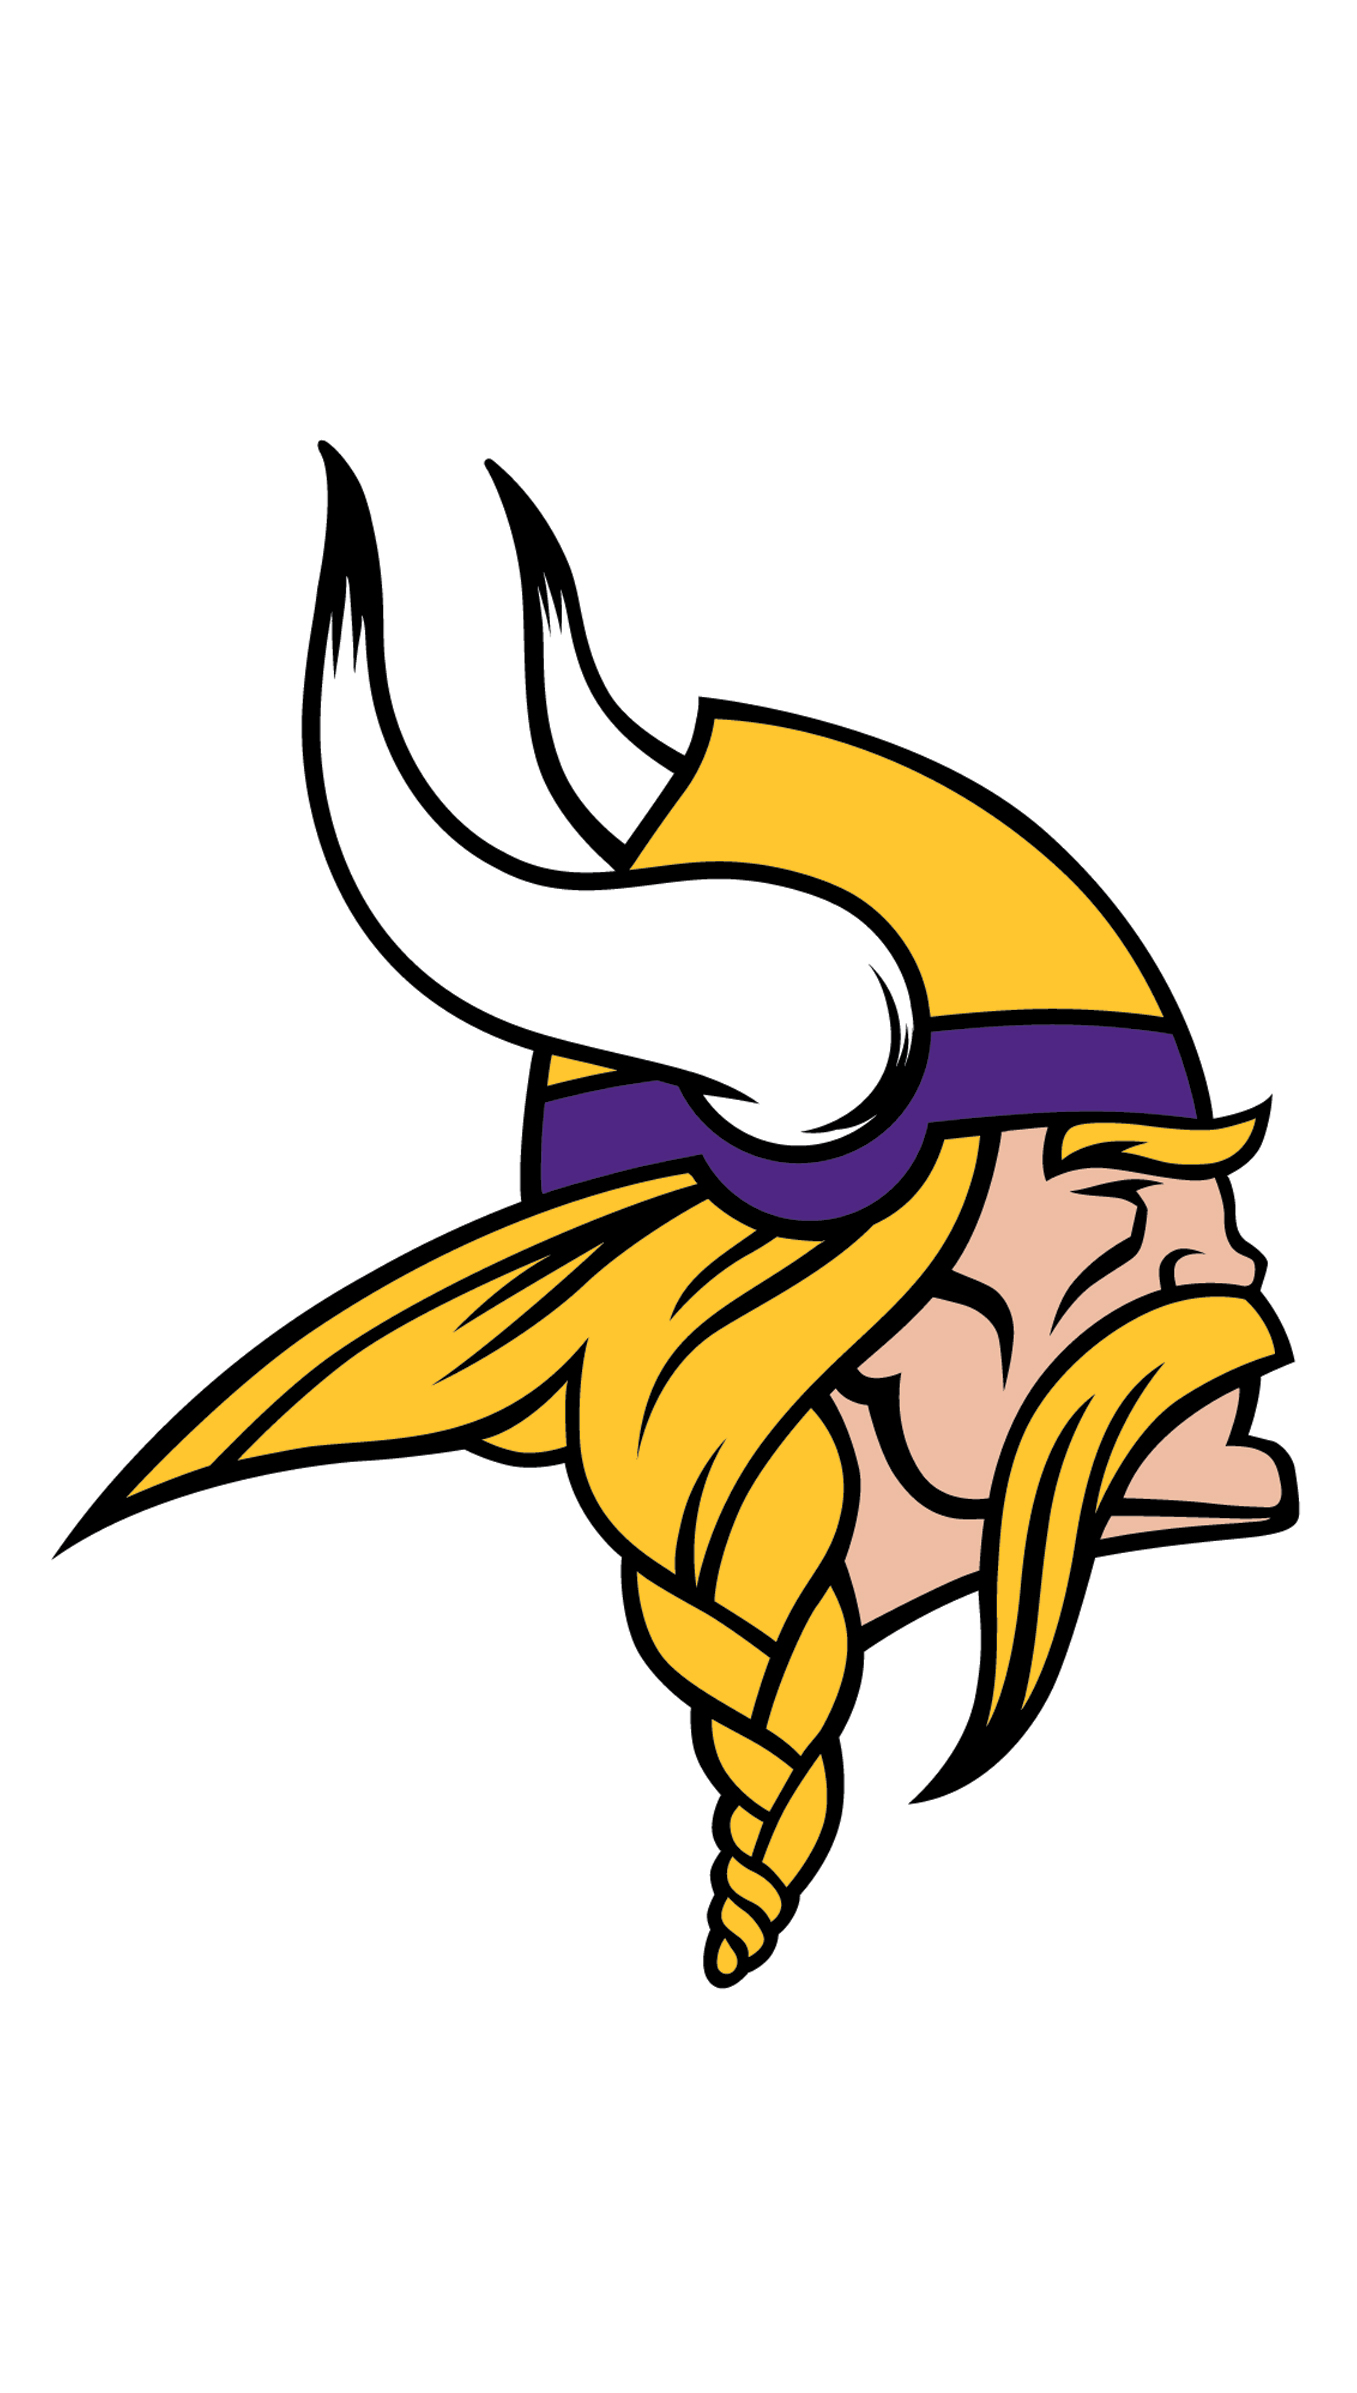 norseman logo for the Minnesota vikings